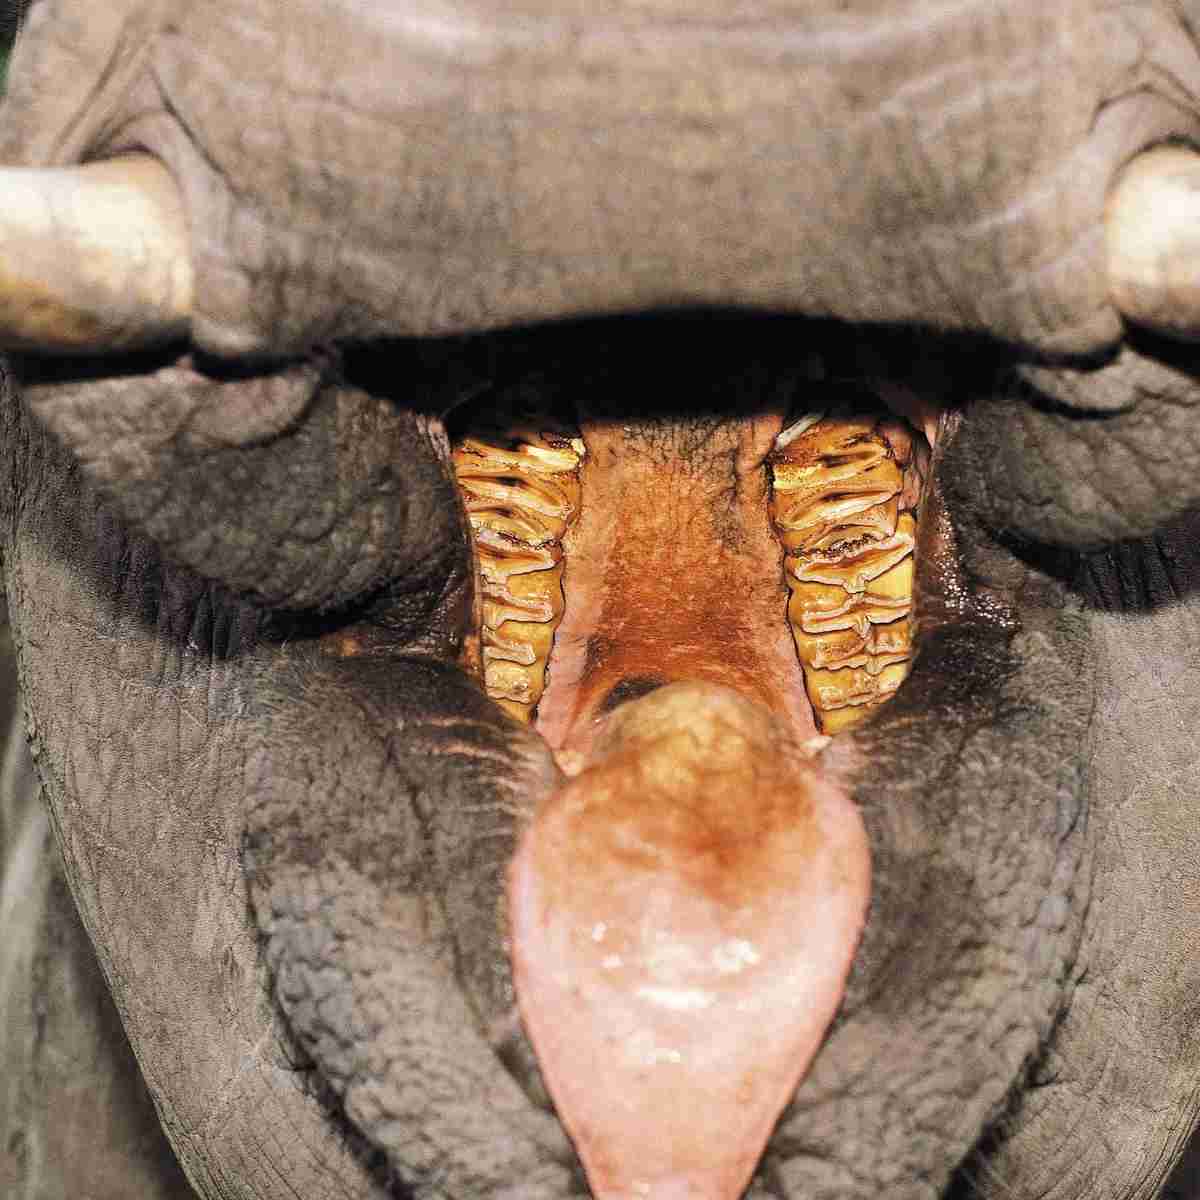 How Many Set of Teeth Do Elephants Have